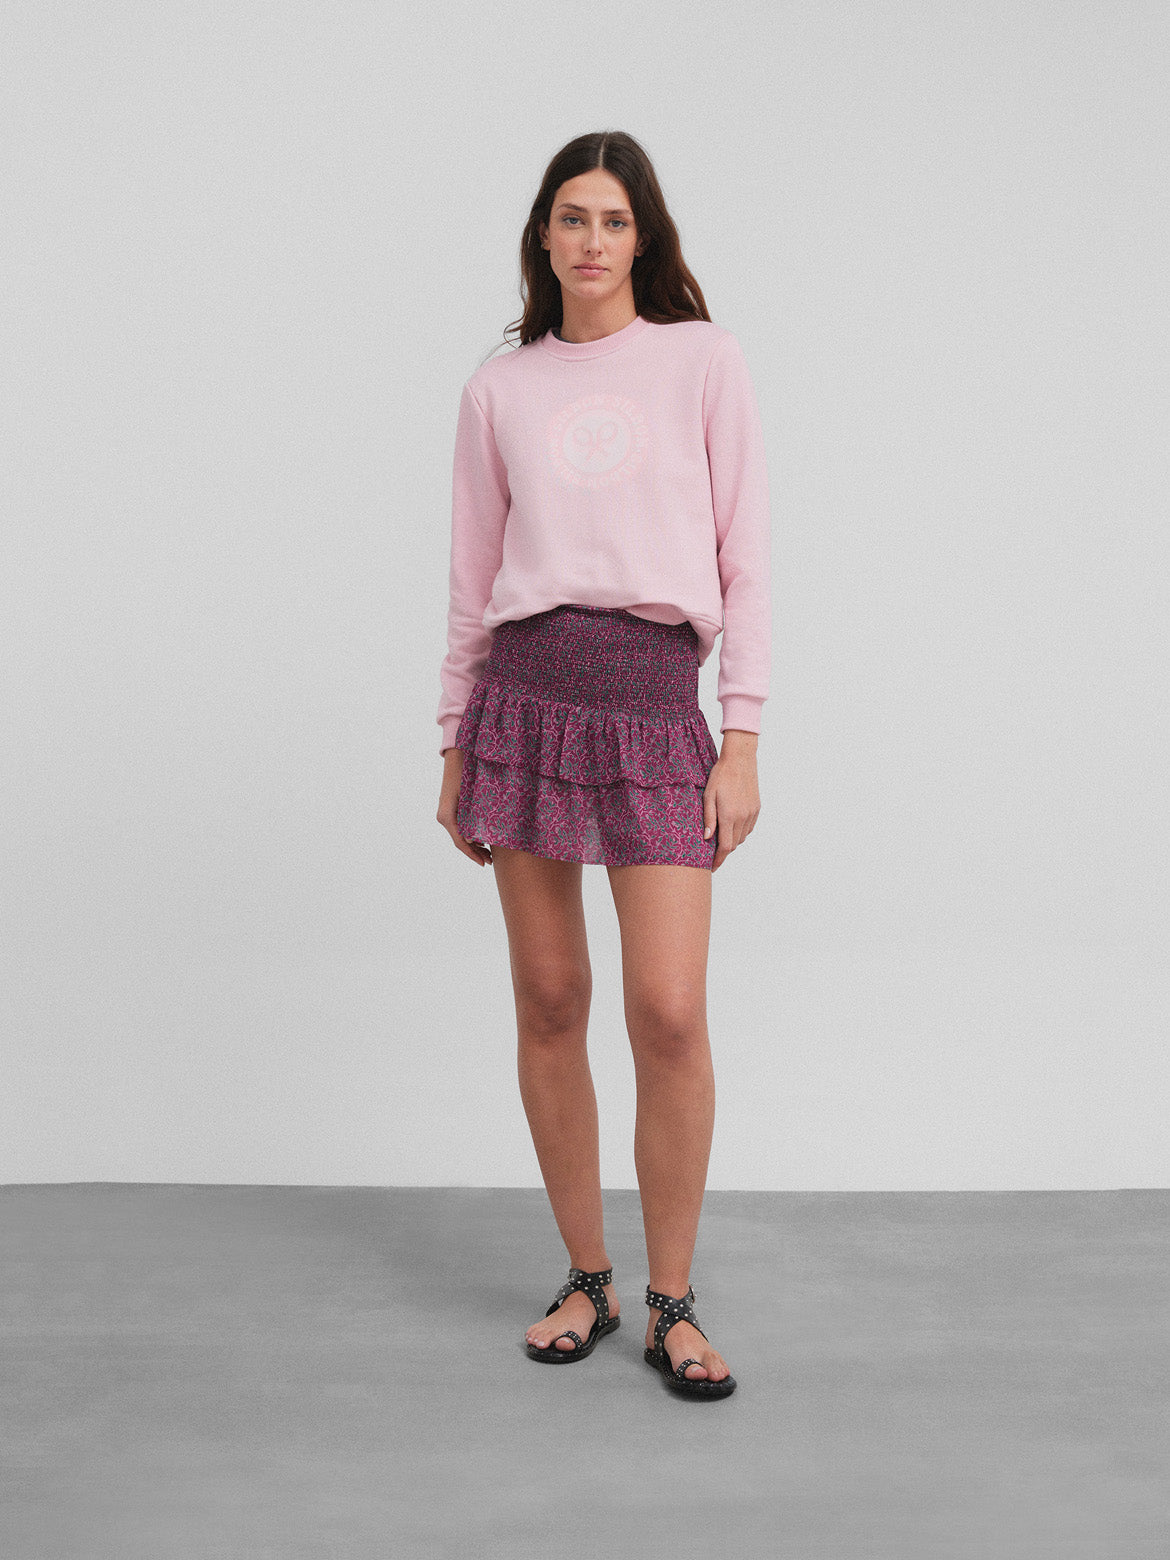 Women's pink circle racket sweatshirt